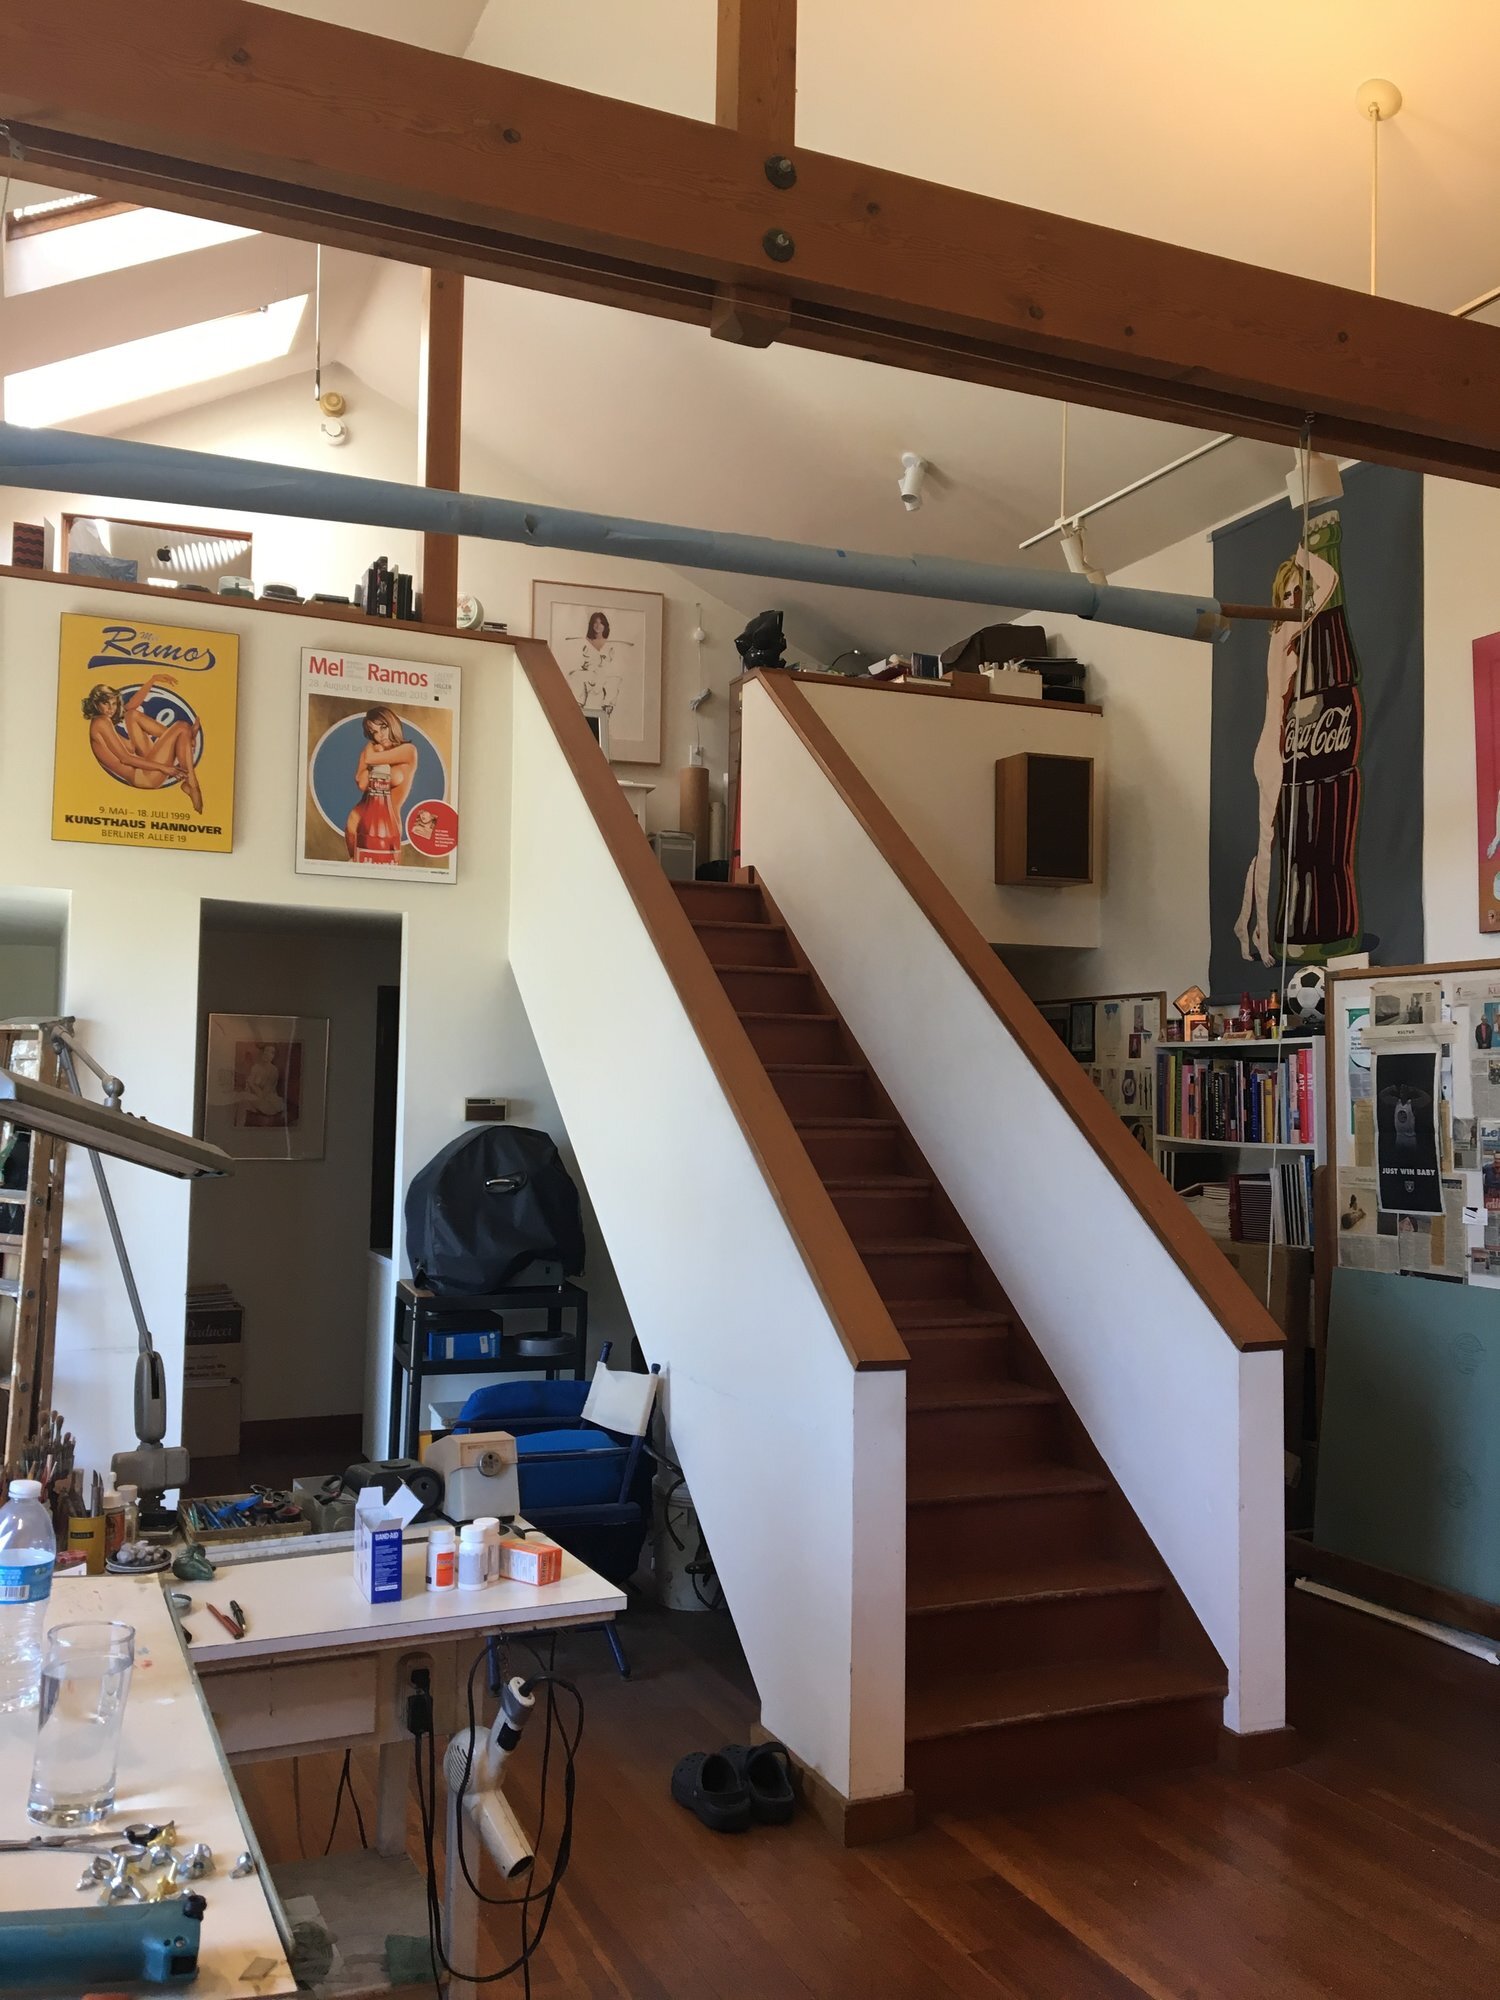 Inside Mel Ramos' Oakland studio.